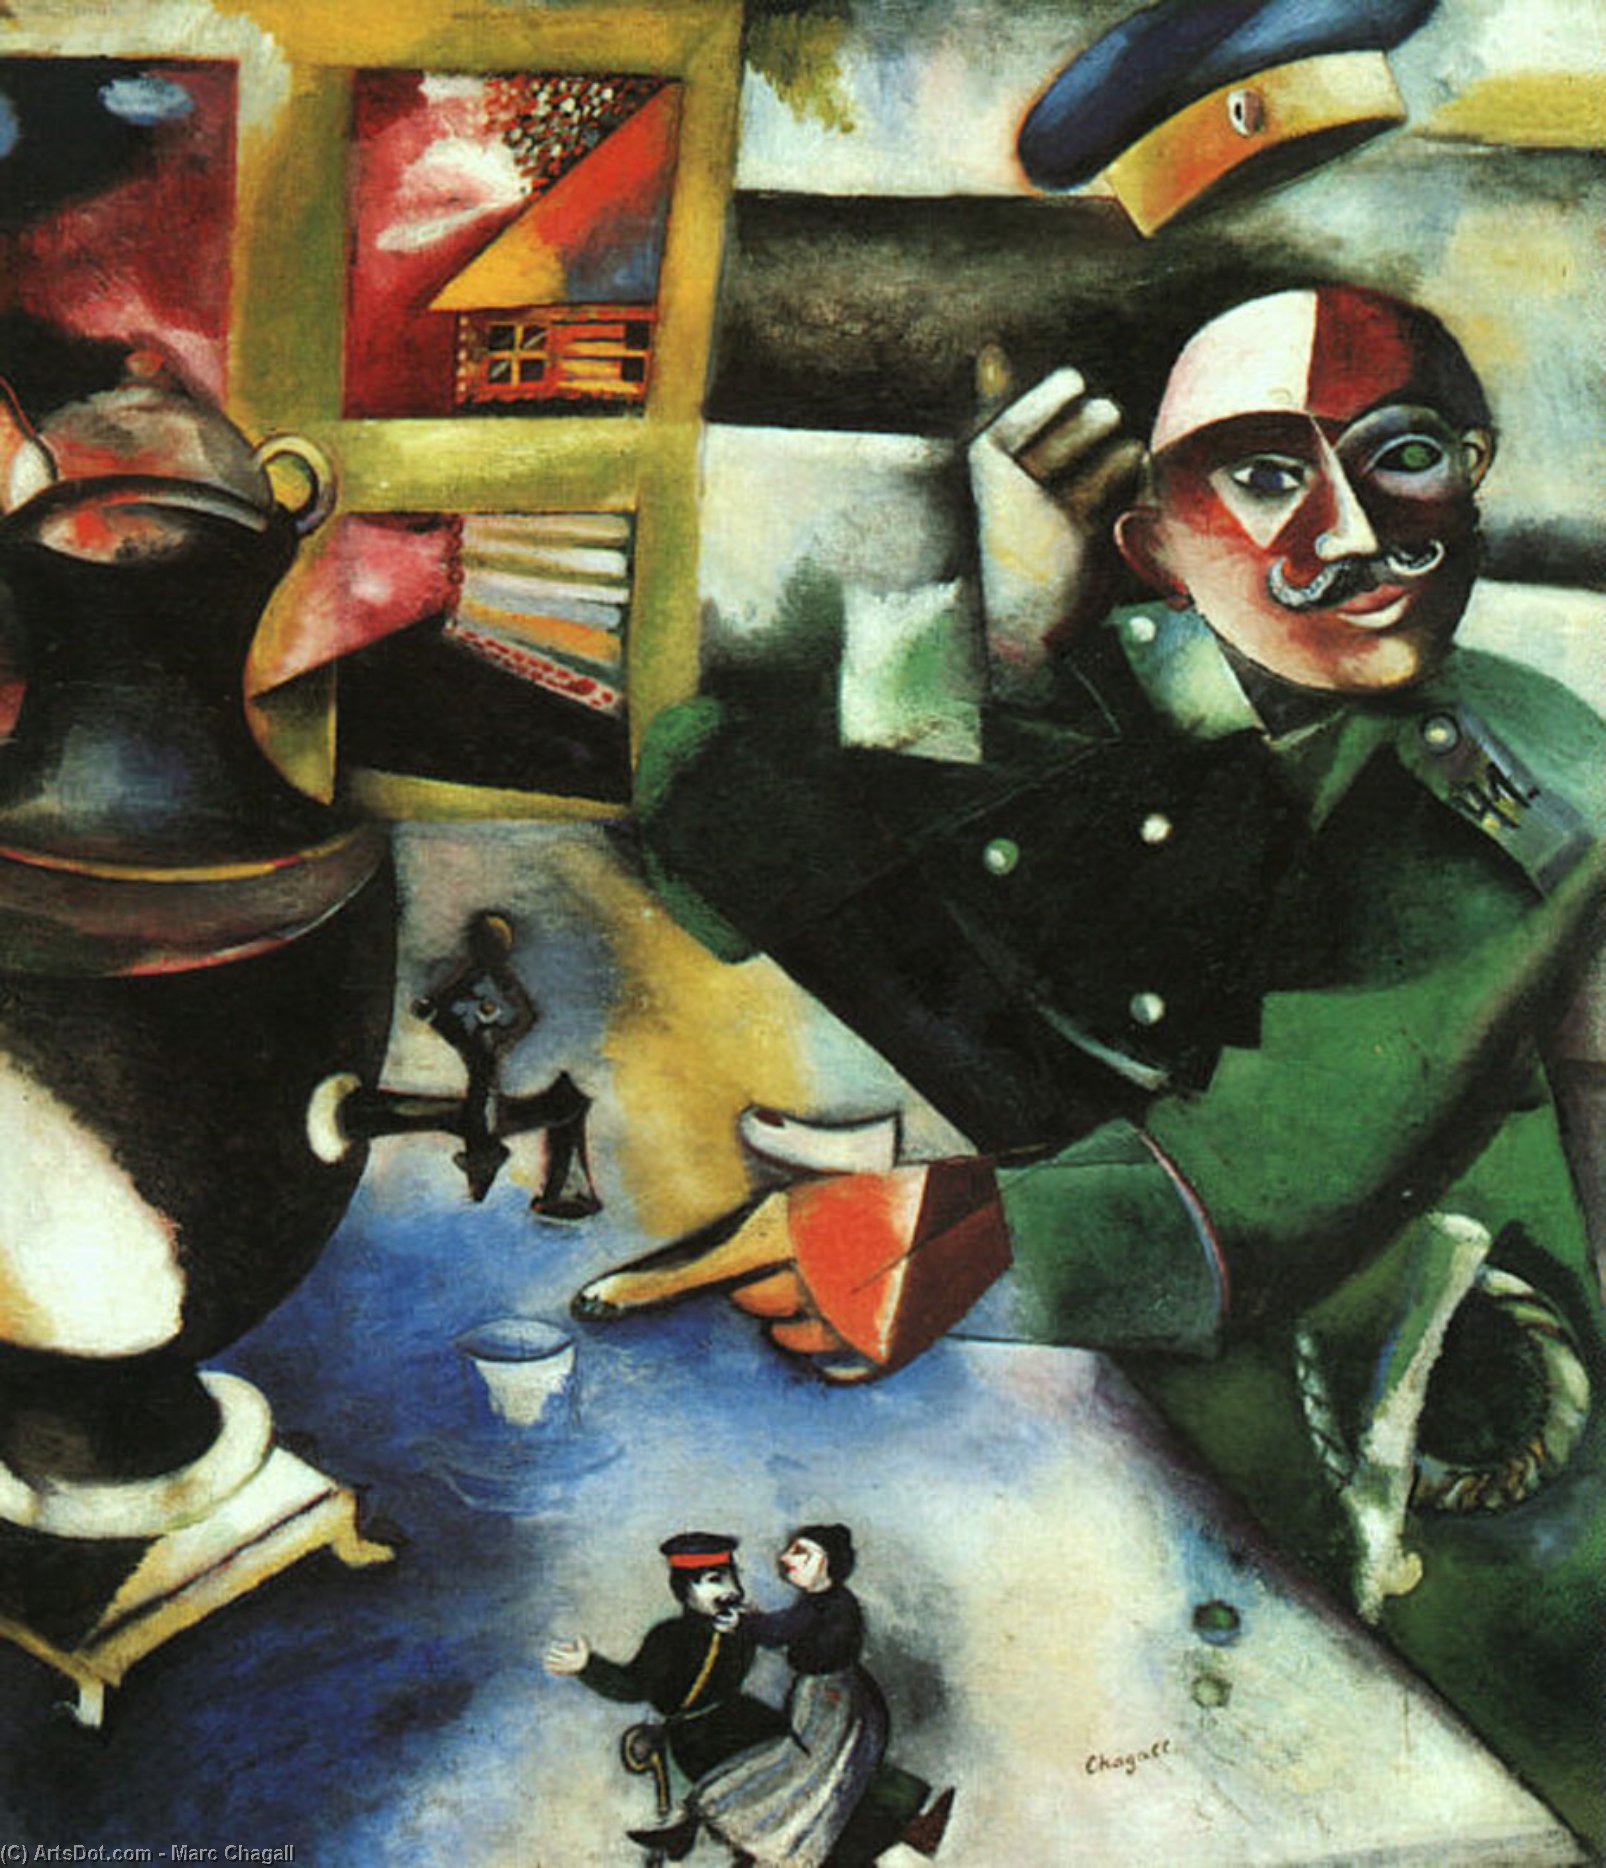 WikiOO.org - Энциклопедия изобразительного искусства - Живопись, Картины  Marc Chagall - Солдат Напитки Масло  в  Холст  тот  соло